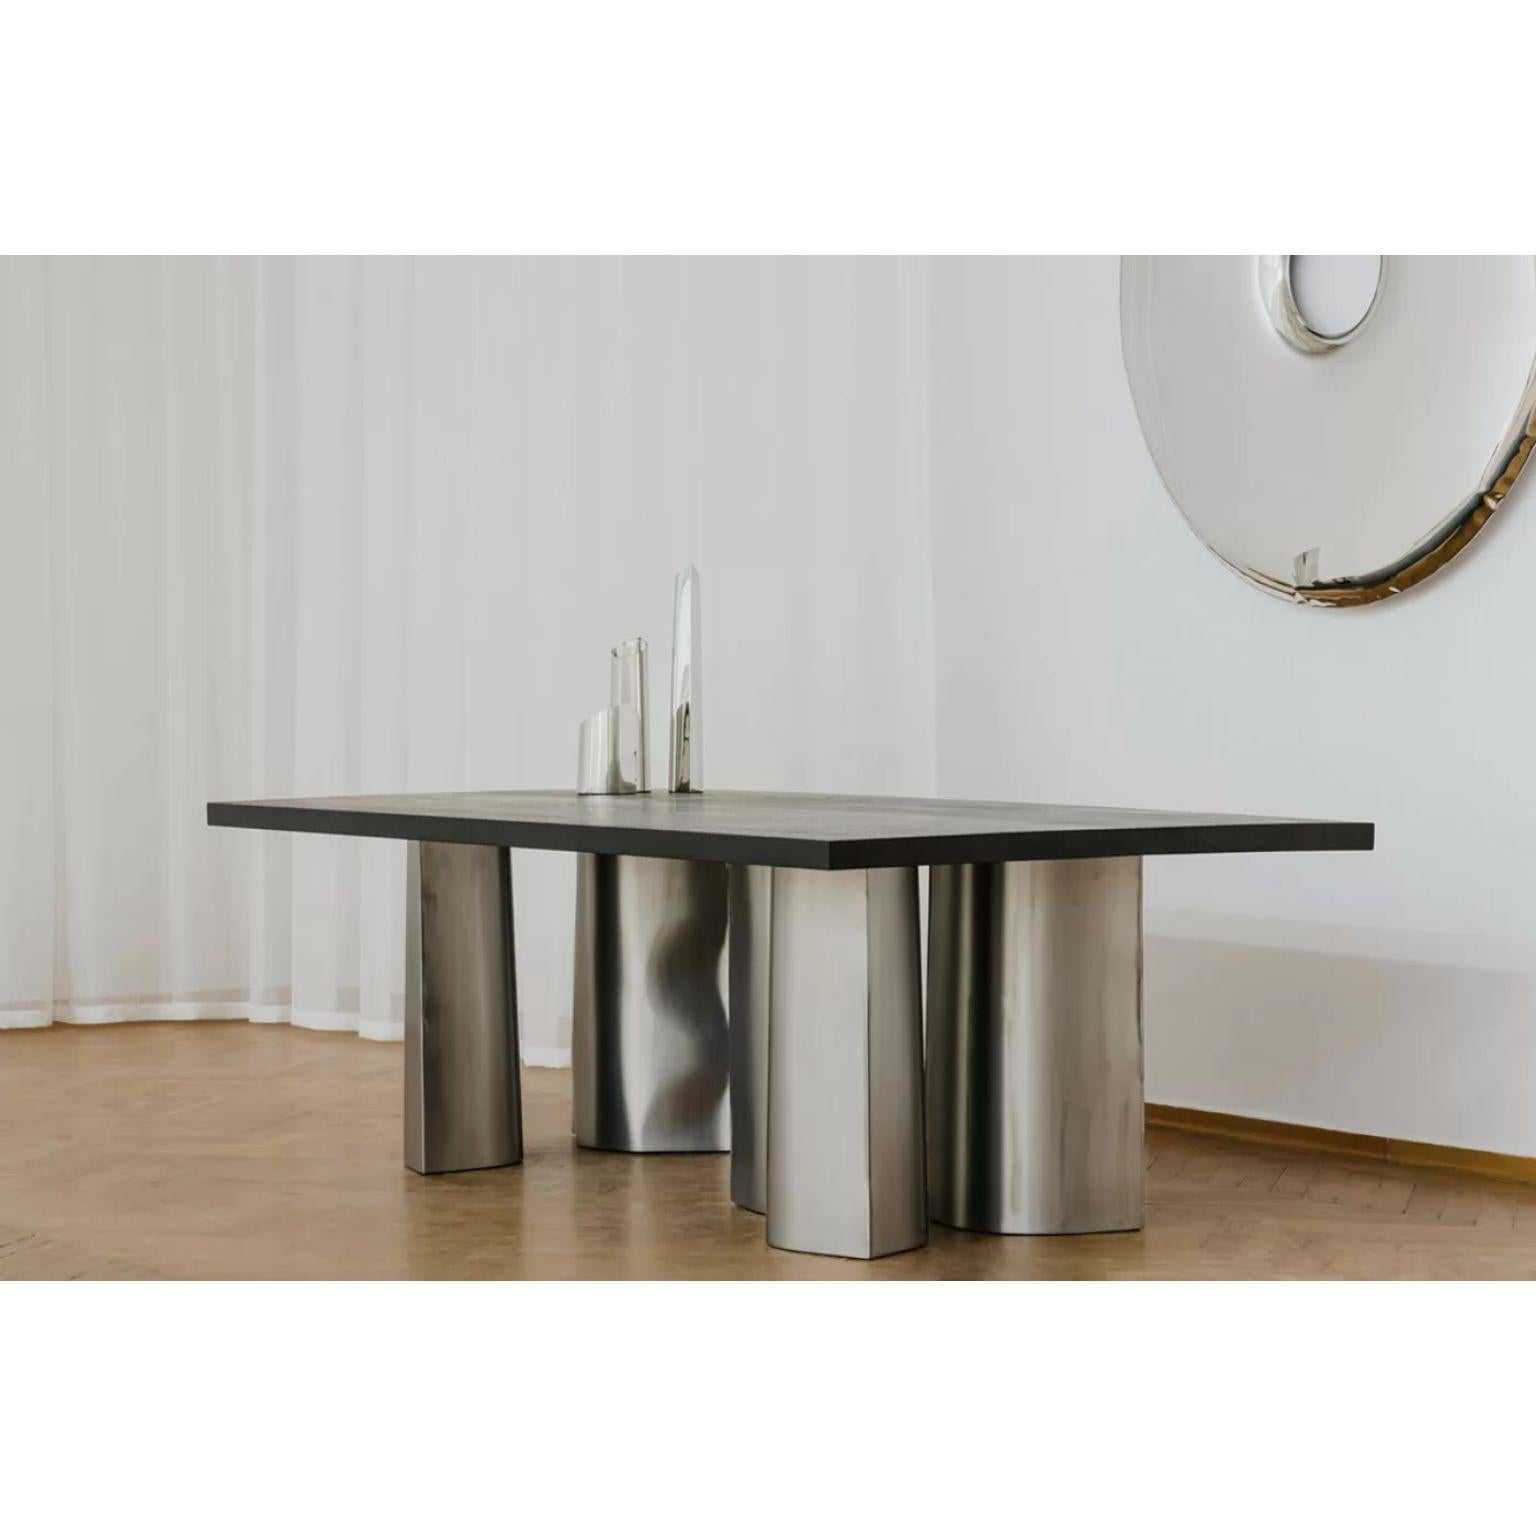 Post-Modern Parova Oak Dining Table by Zieta For Sale